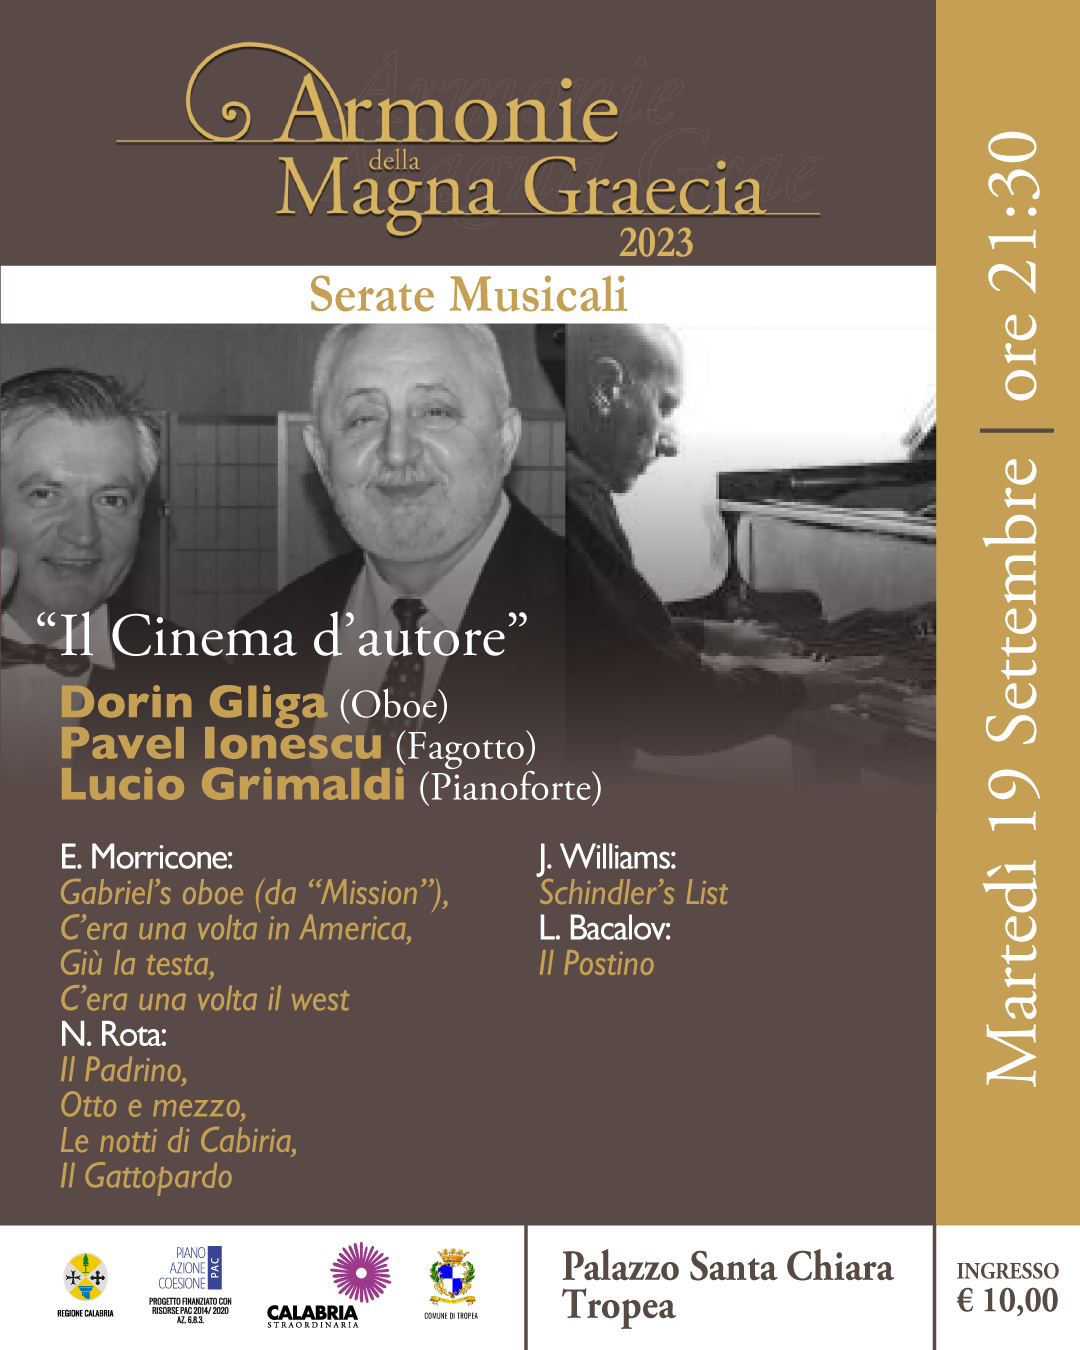 Il Cinema d'autoreDorin Gliga (oboe)Pavel Ionescu (fagotto)Lucio Grimaldi (pianoforte)